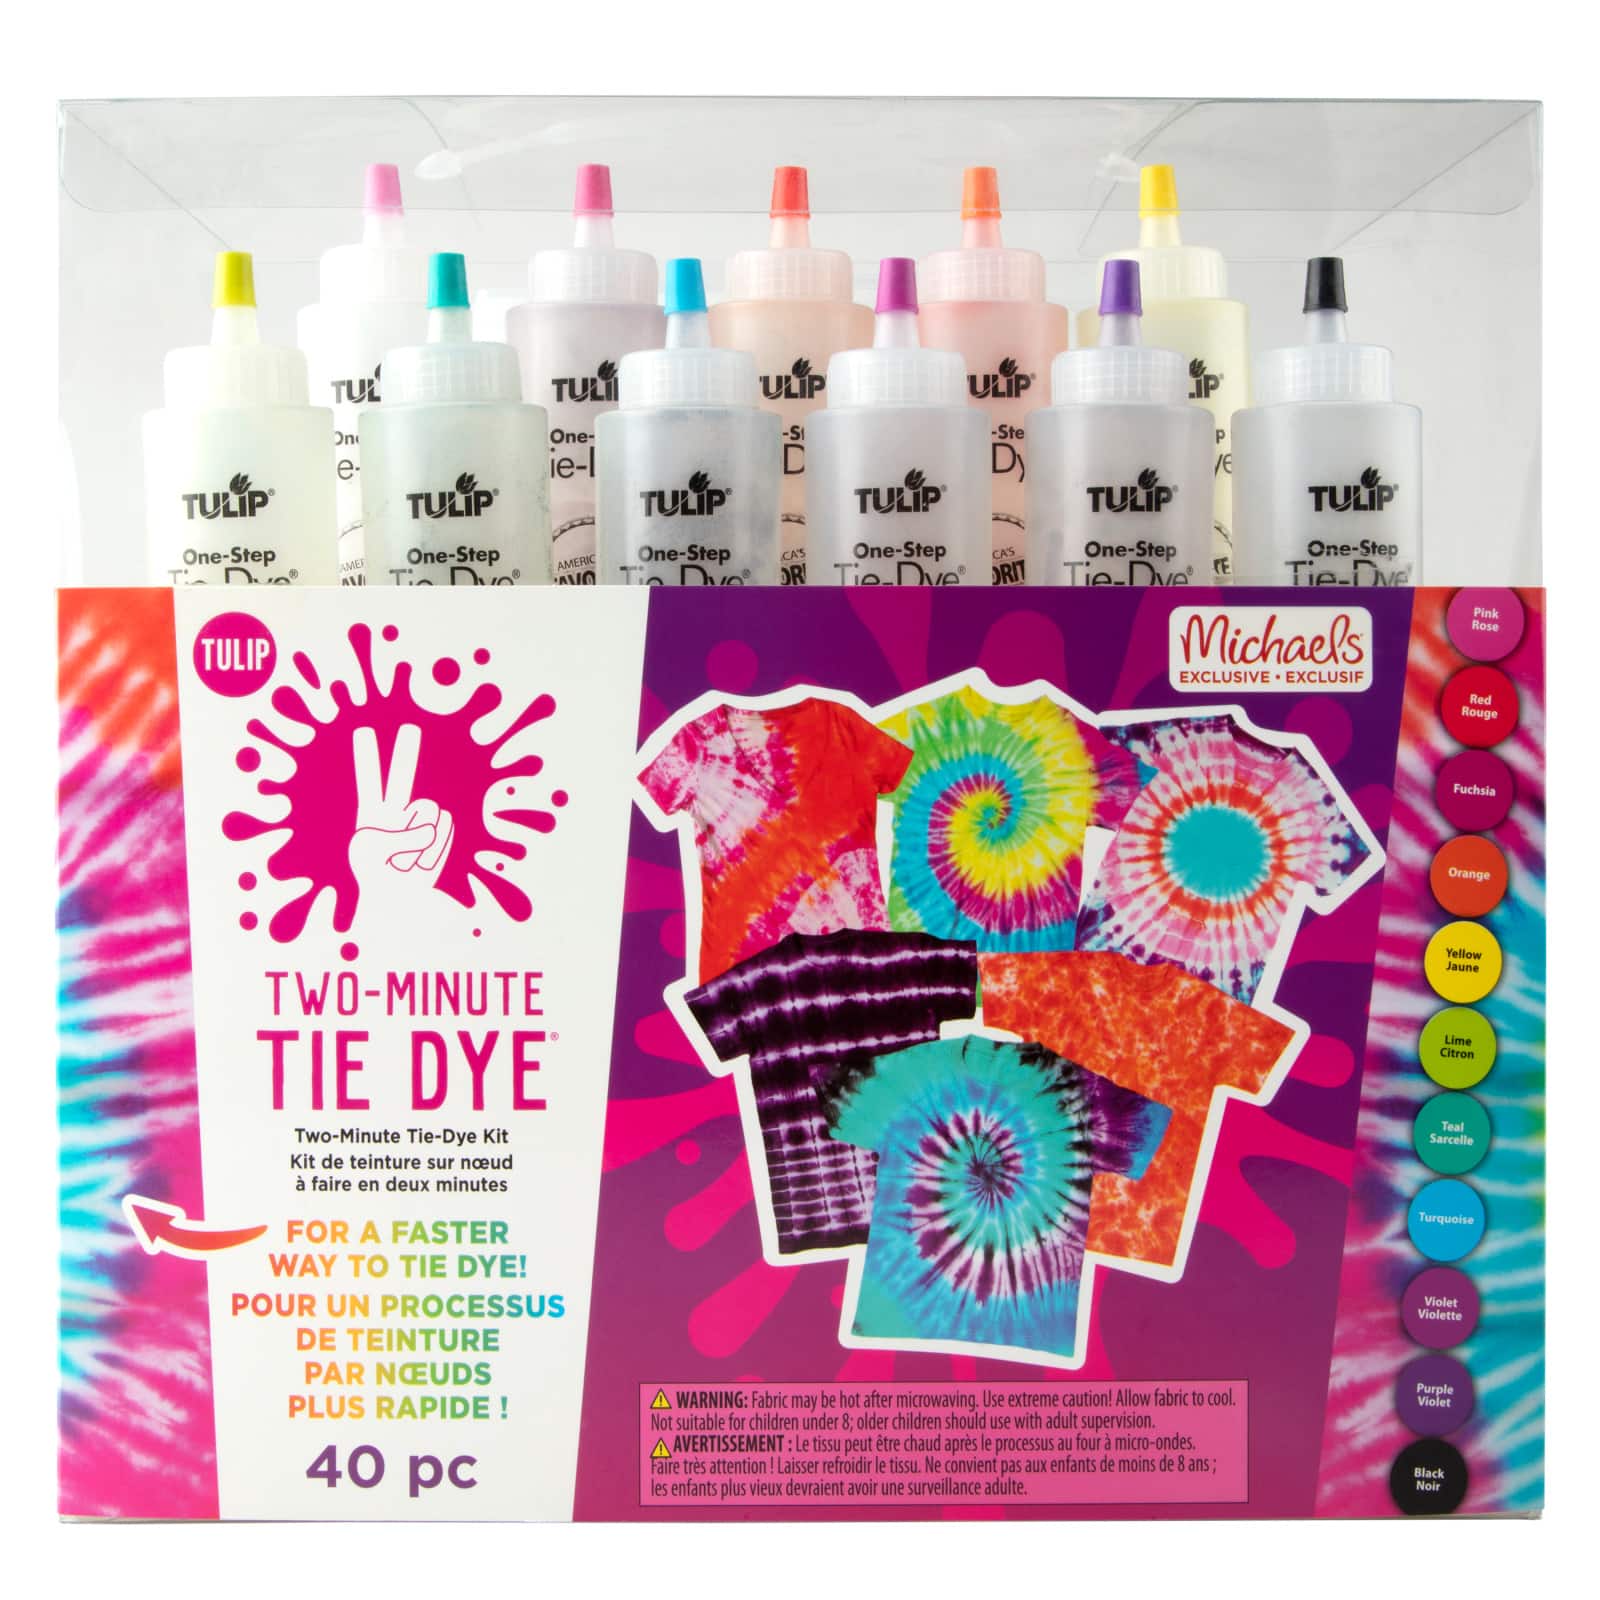 Nature Dye Kit by Make Market®